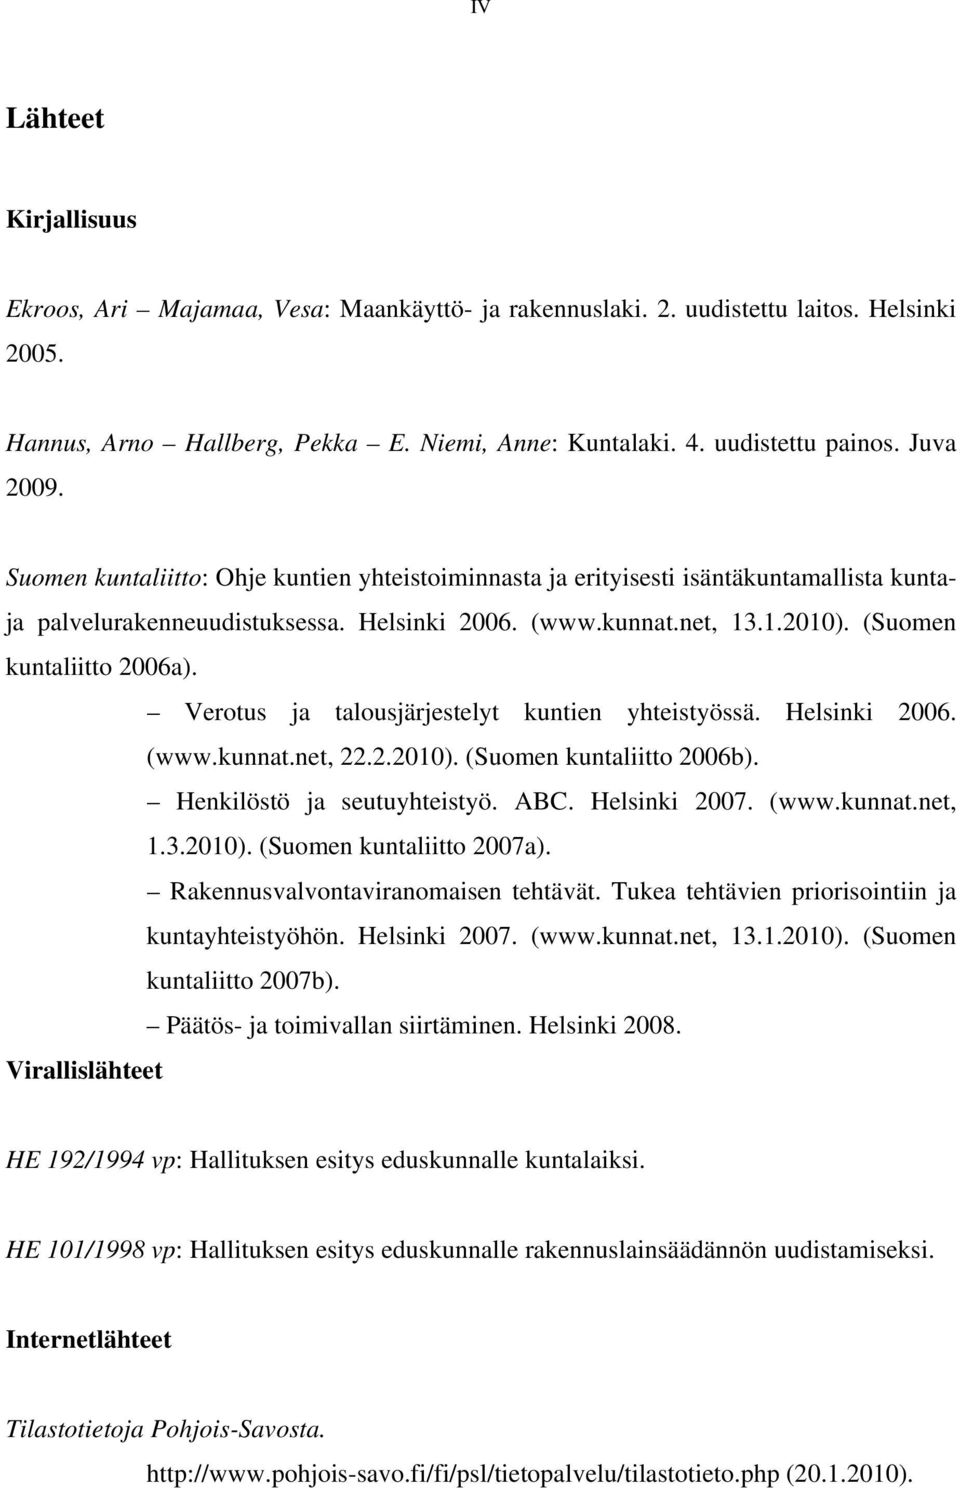 (Suomen kuntaliitto 2006a). Verotus ja talousjärjestelyt kuntien yhteistyössä. Helsinki 2006. (www.kunnat.net, 22.2.2010). (Suomen kuntaliitto 2006b). Henkilöstö ja seutuyhteistyö. ABC. Helsinki 2007.